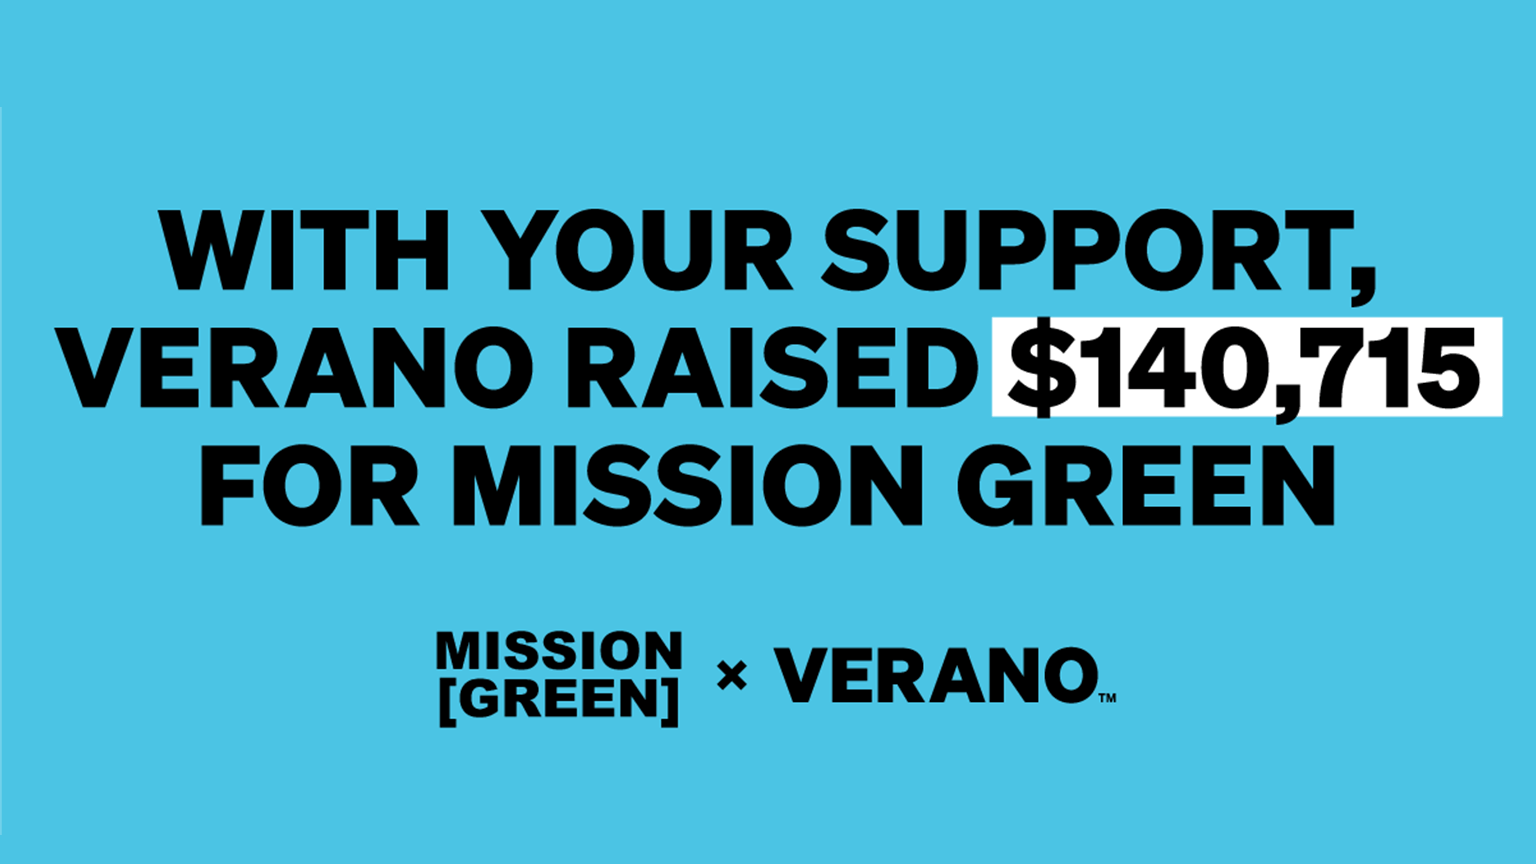 Verano Donates to Mission Green